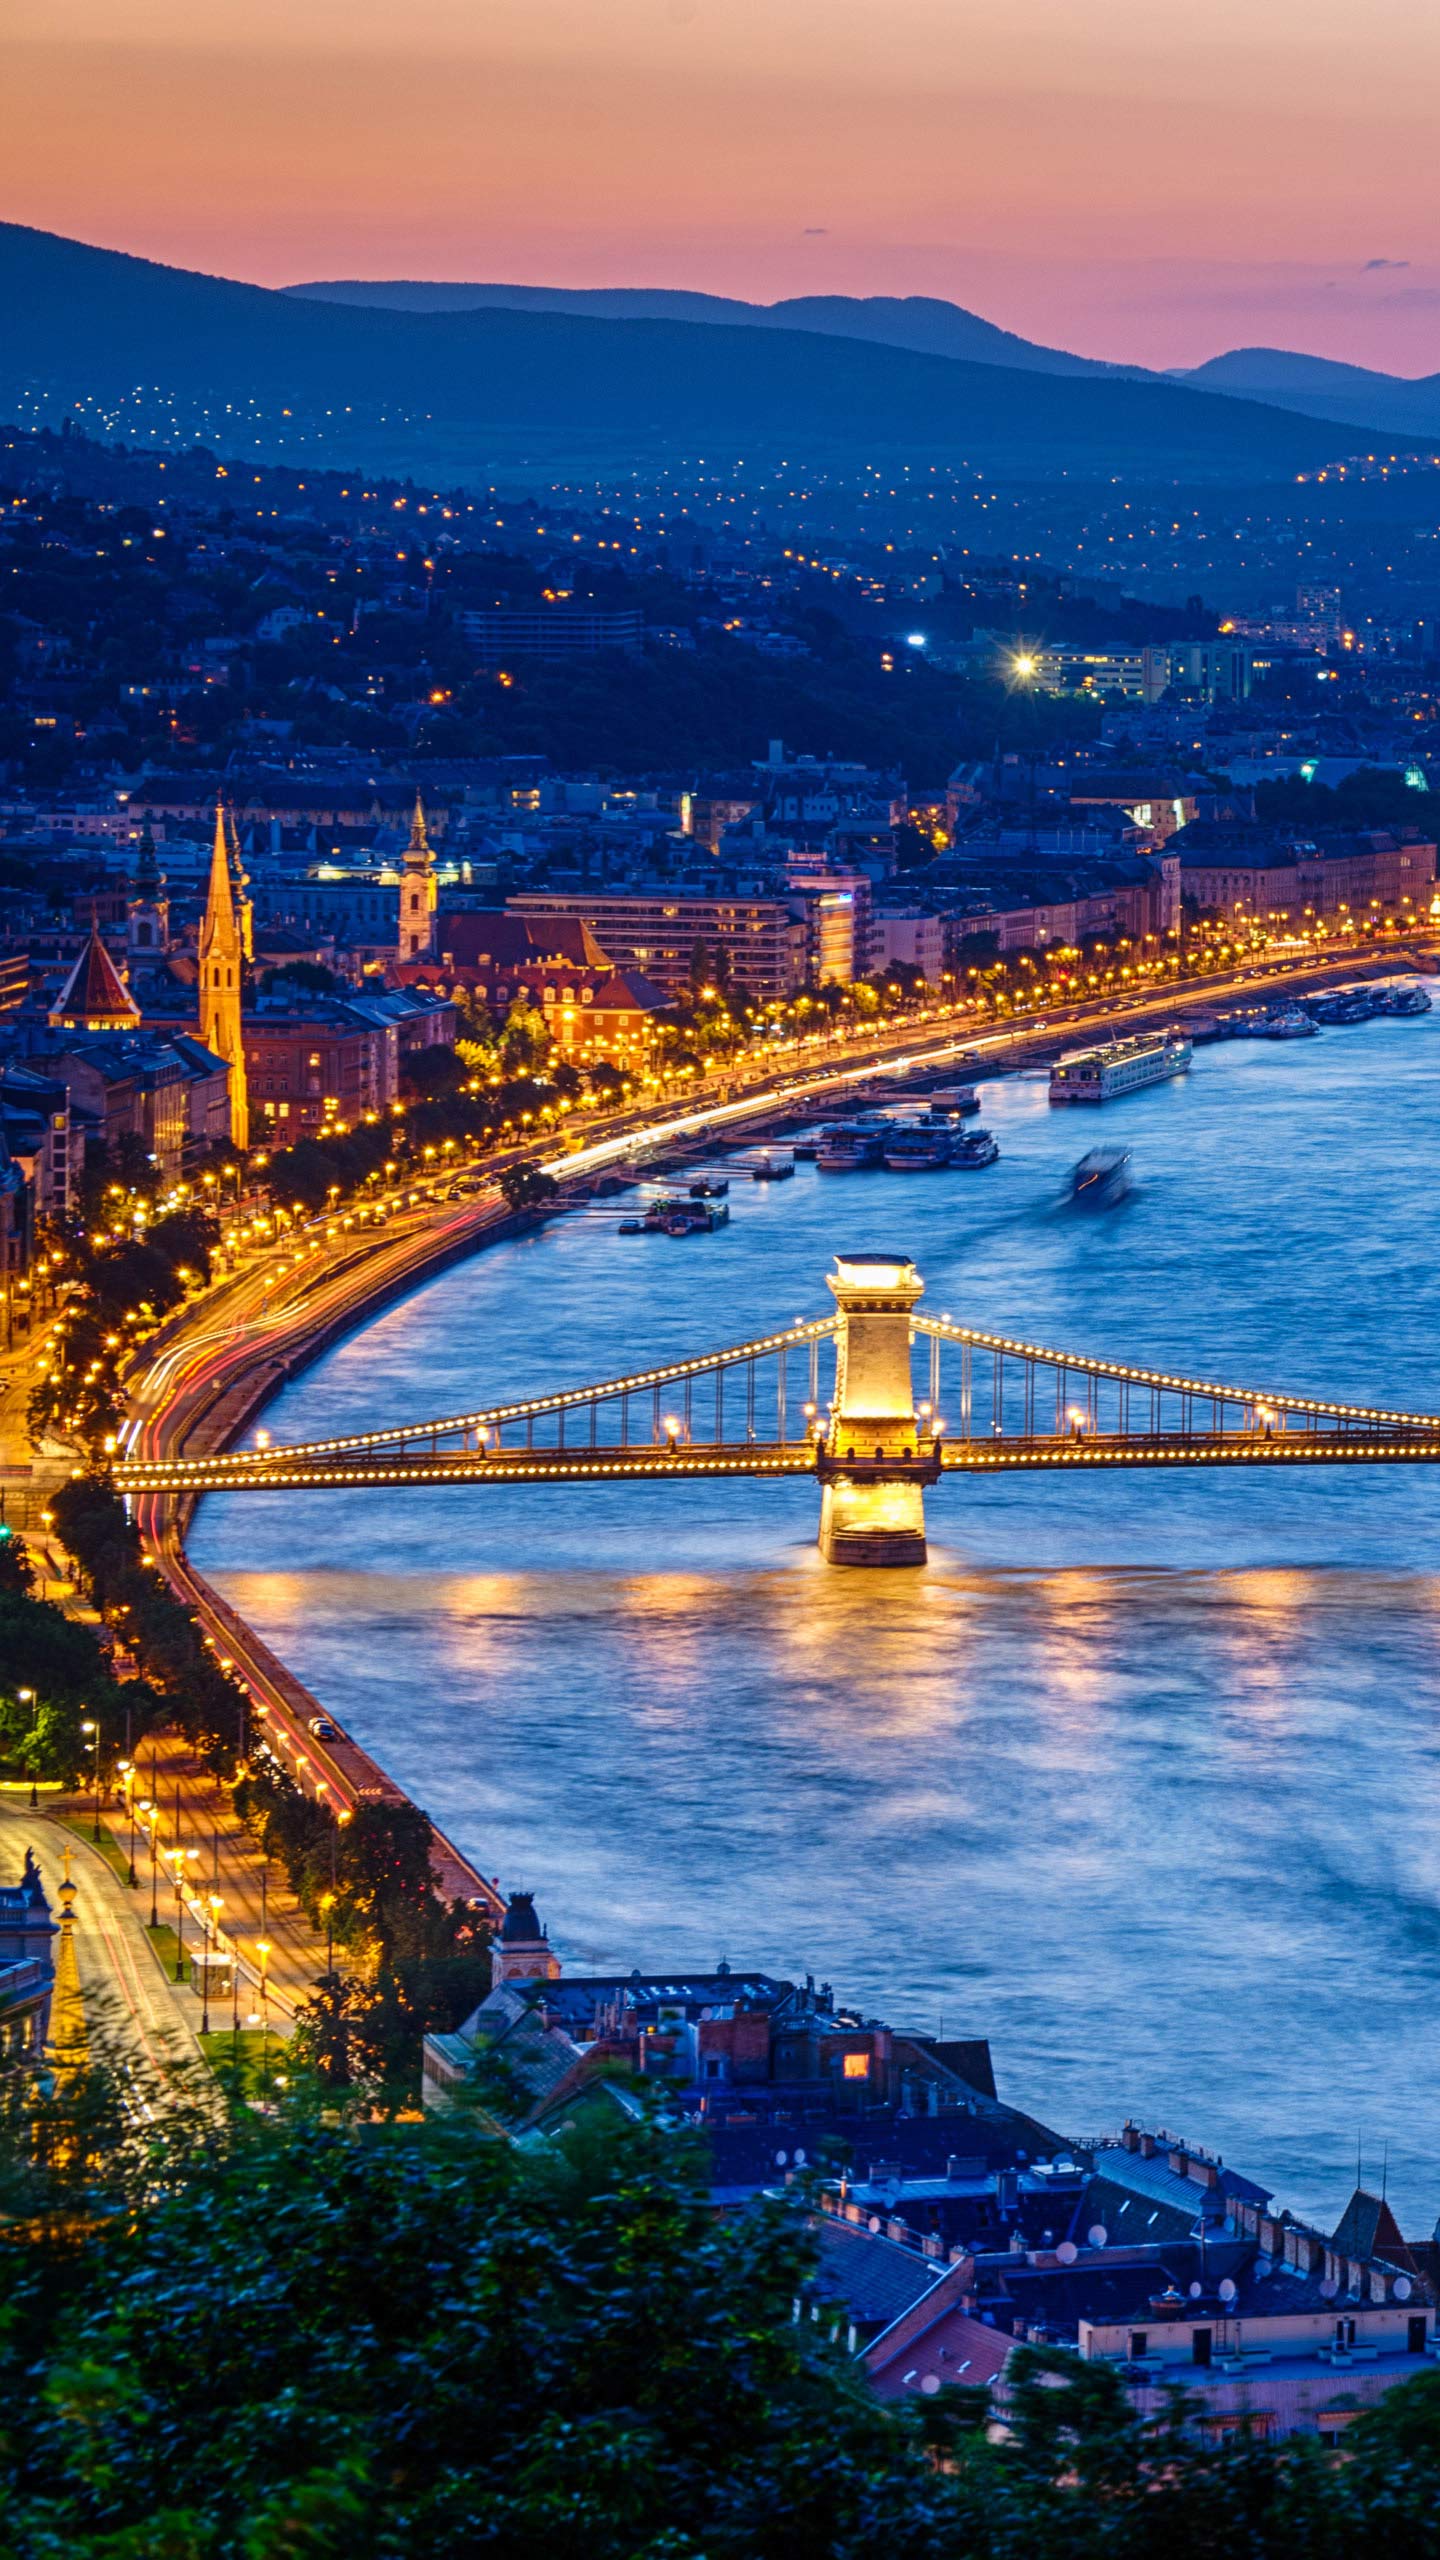 1440x2560, 499 Kb / Будапешт, Венгрия, мост, огни, бухта, гавань